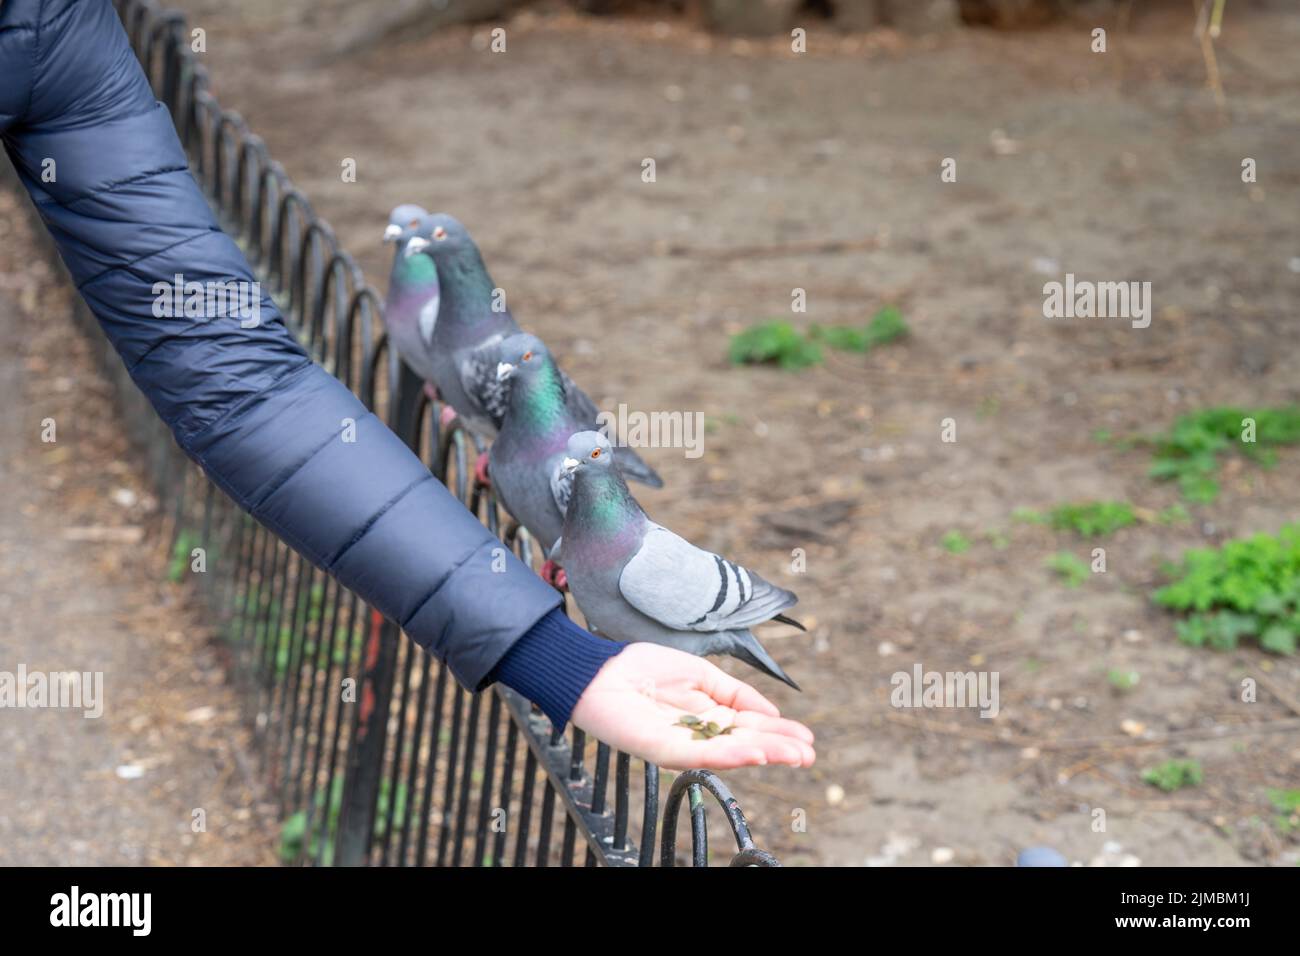 Alimentazione piccioni nel parco. La donna nutre piccioni nel parco di Londra. Foto Stock